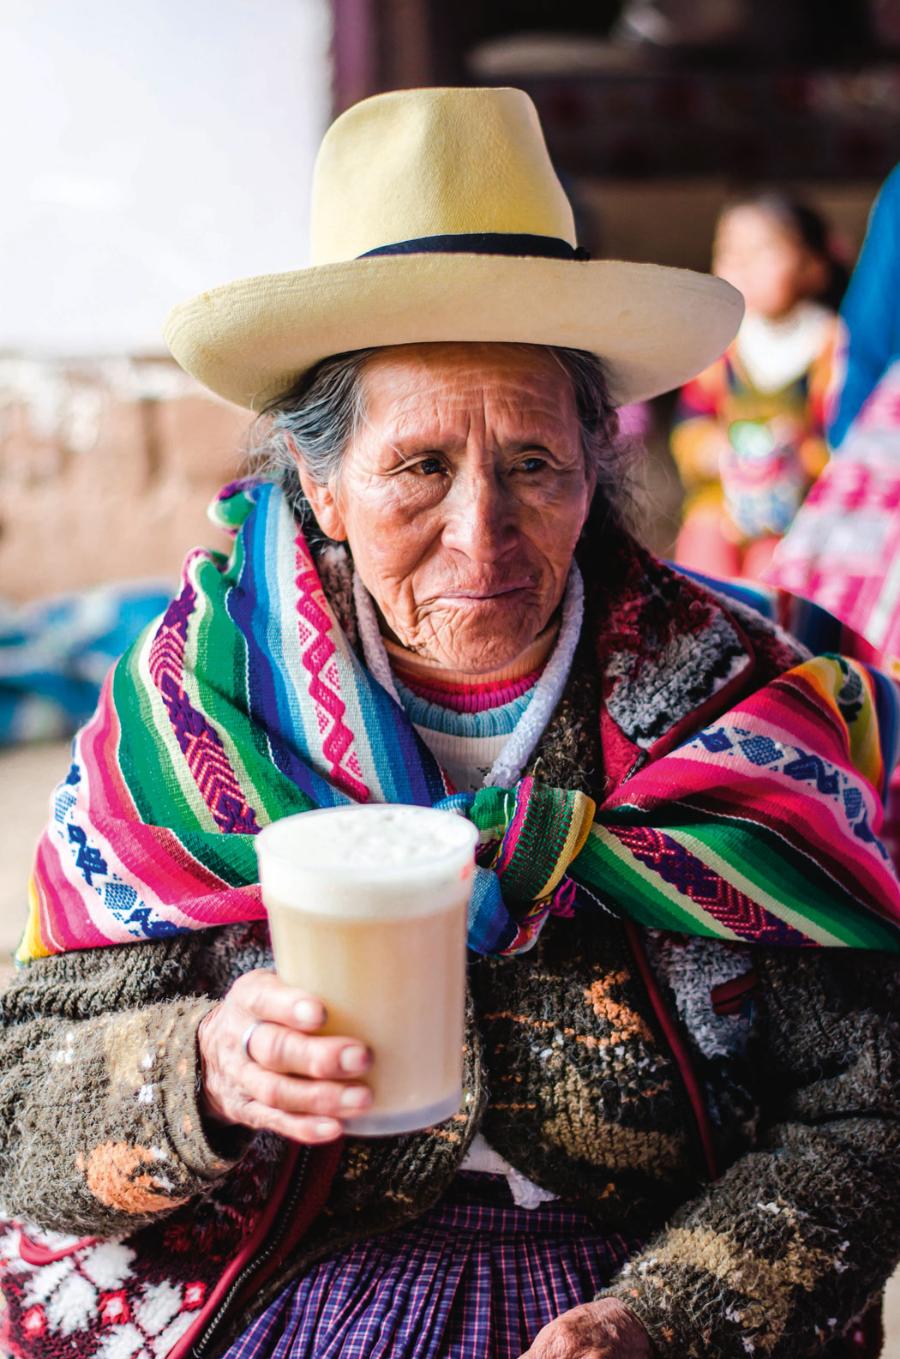 Kobieta z ludu Ajmara (Boliwia, Peru) z piwem kukurydzianym chicha de jora.